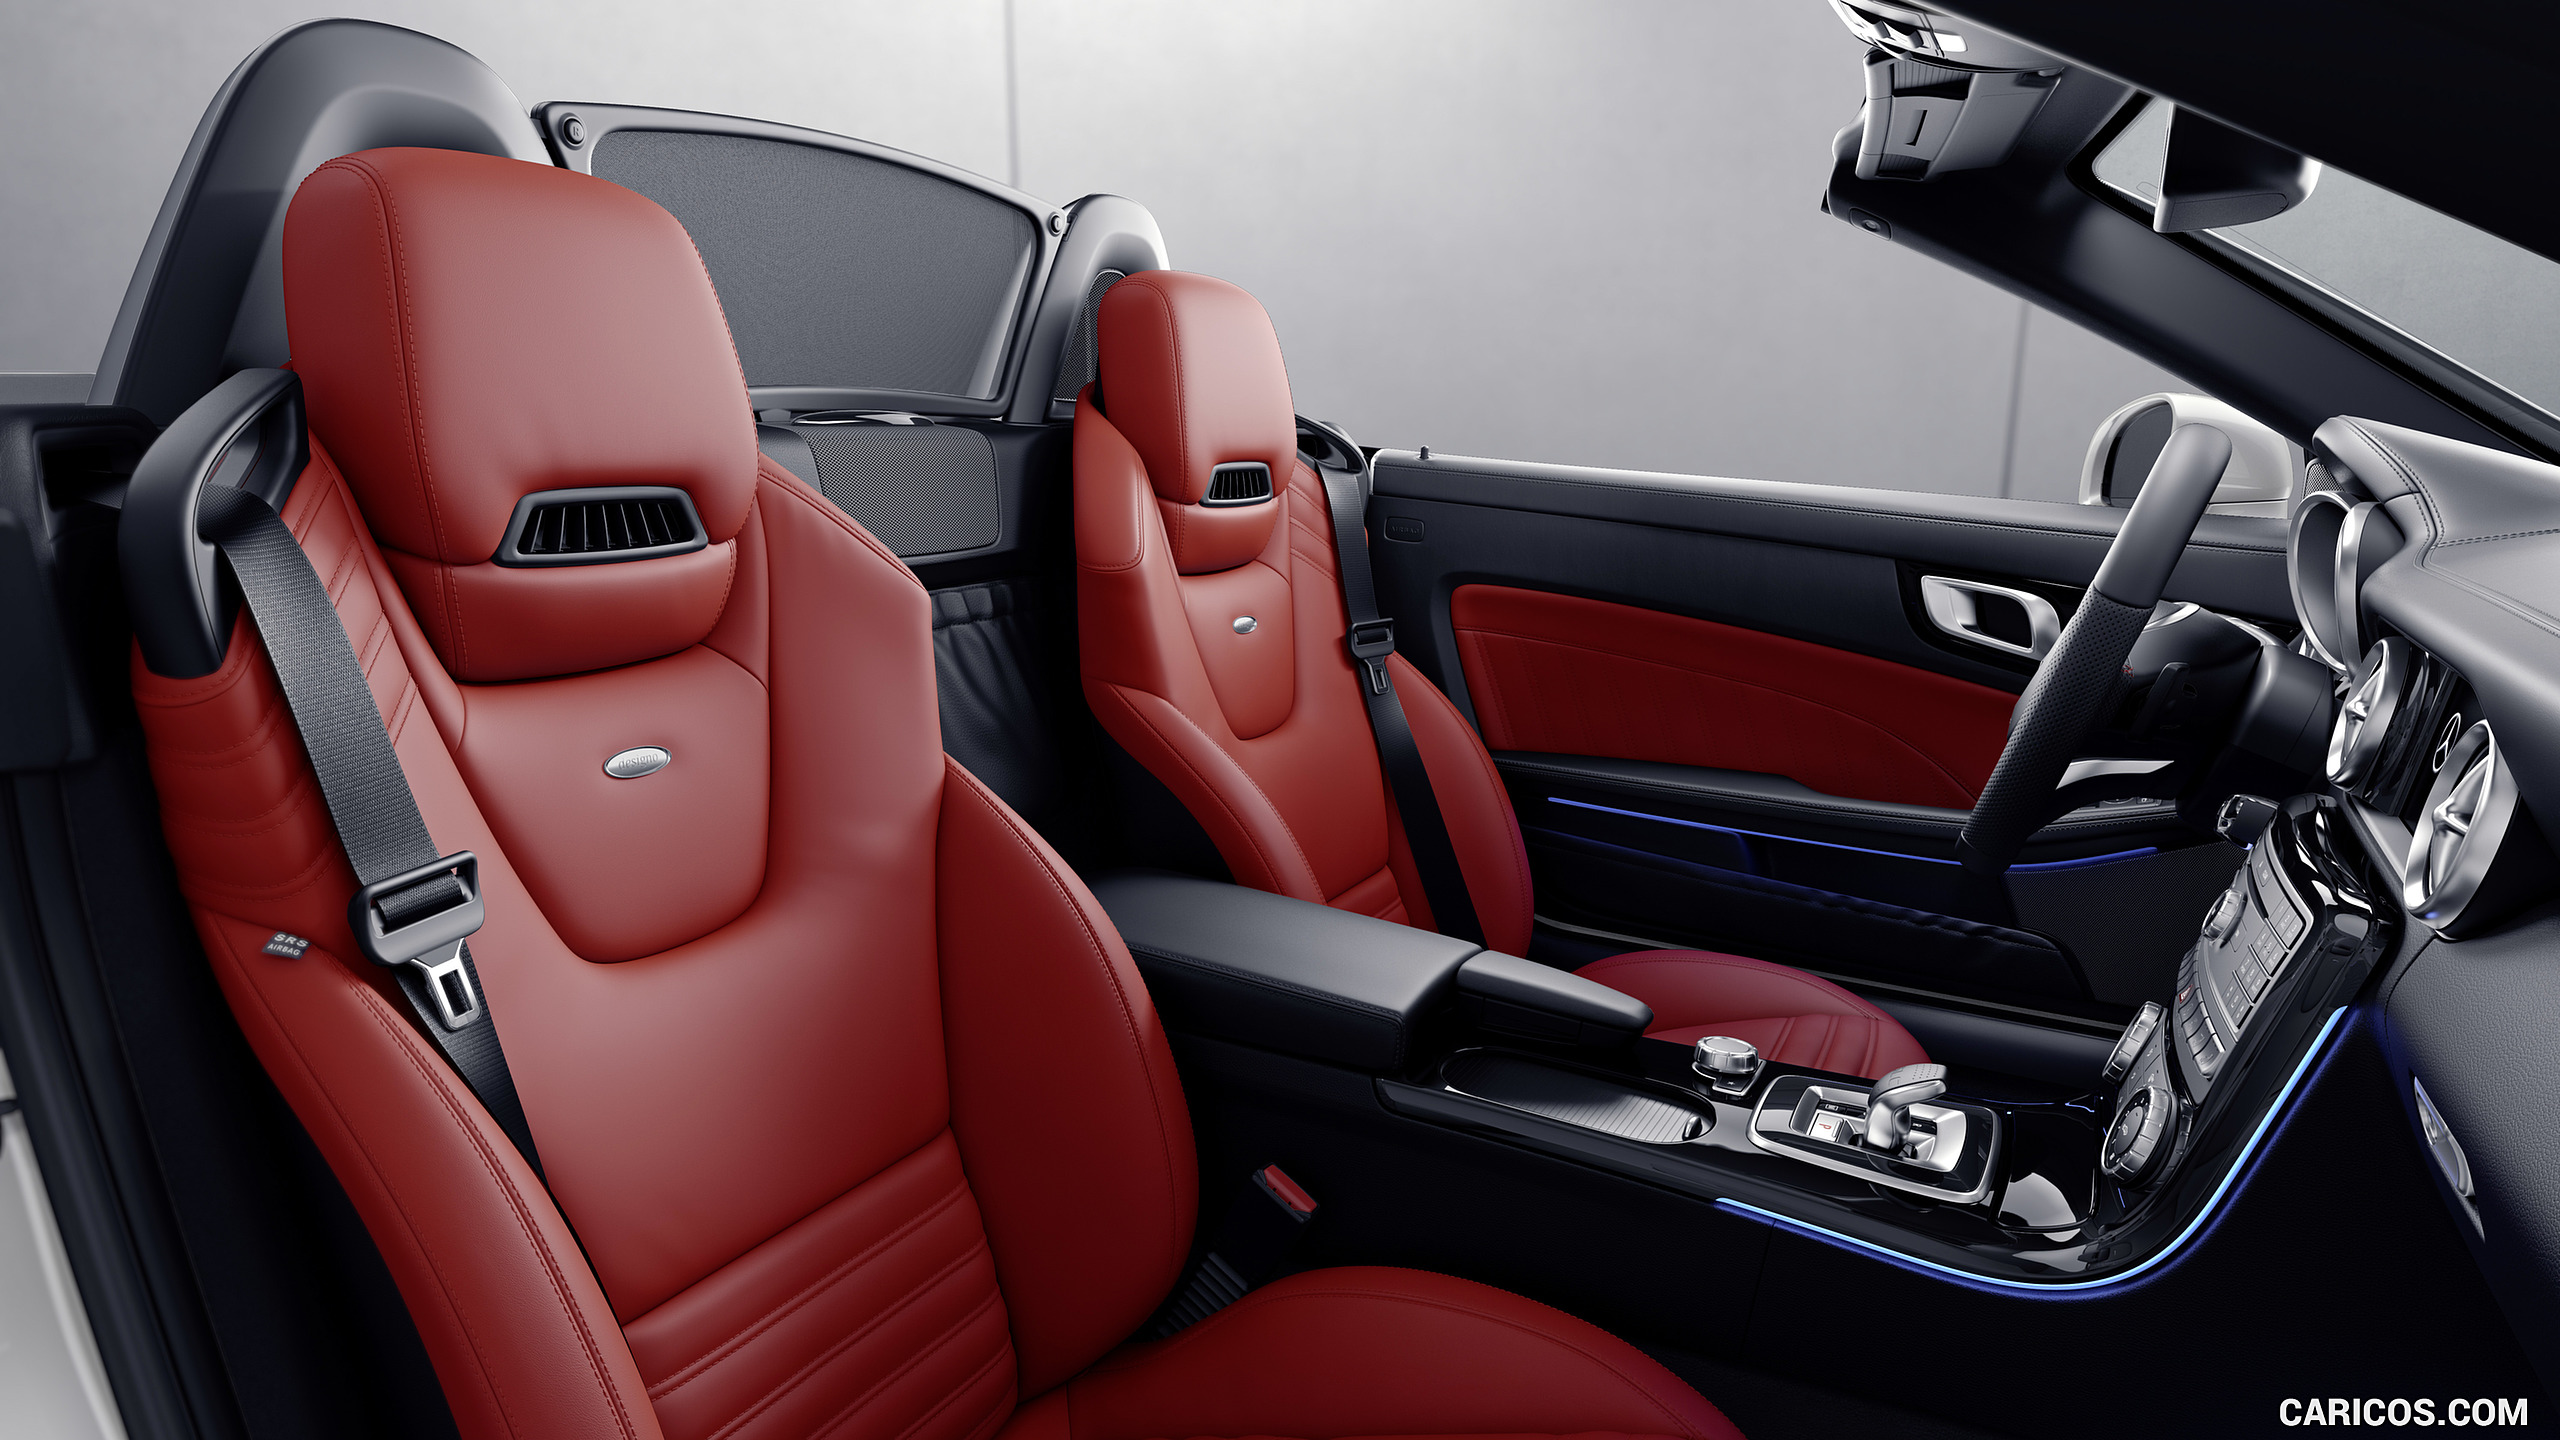 2017 Mercedes-Benz SLC RedArt Edition - Interior, Seats, #12 of 13